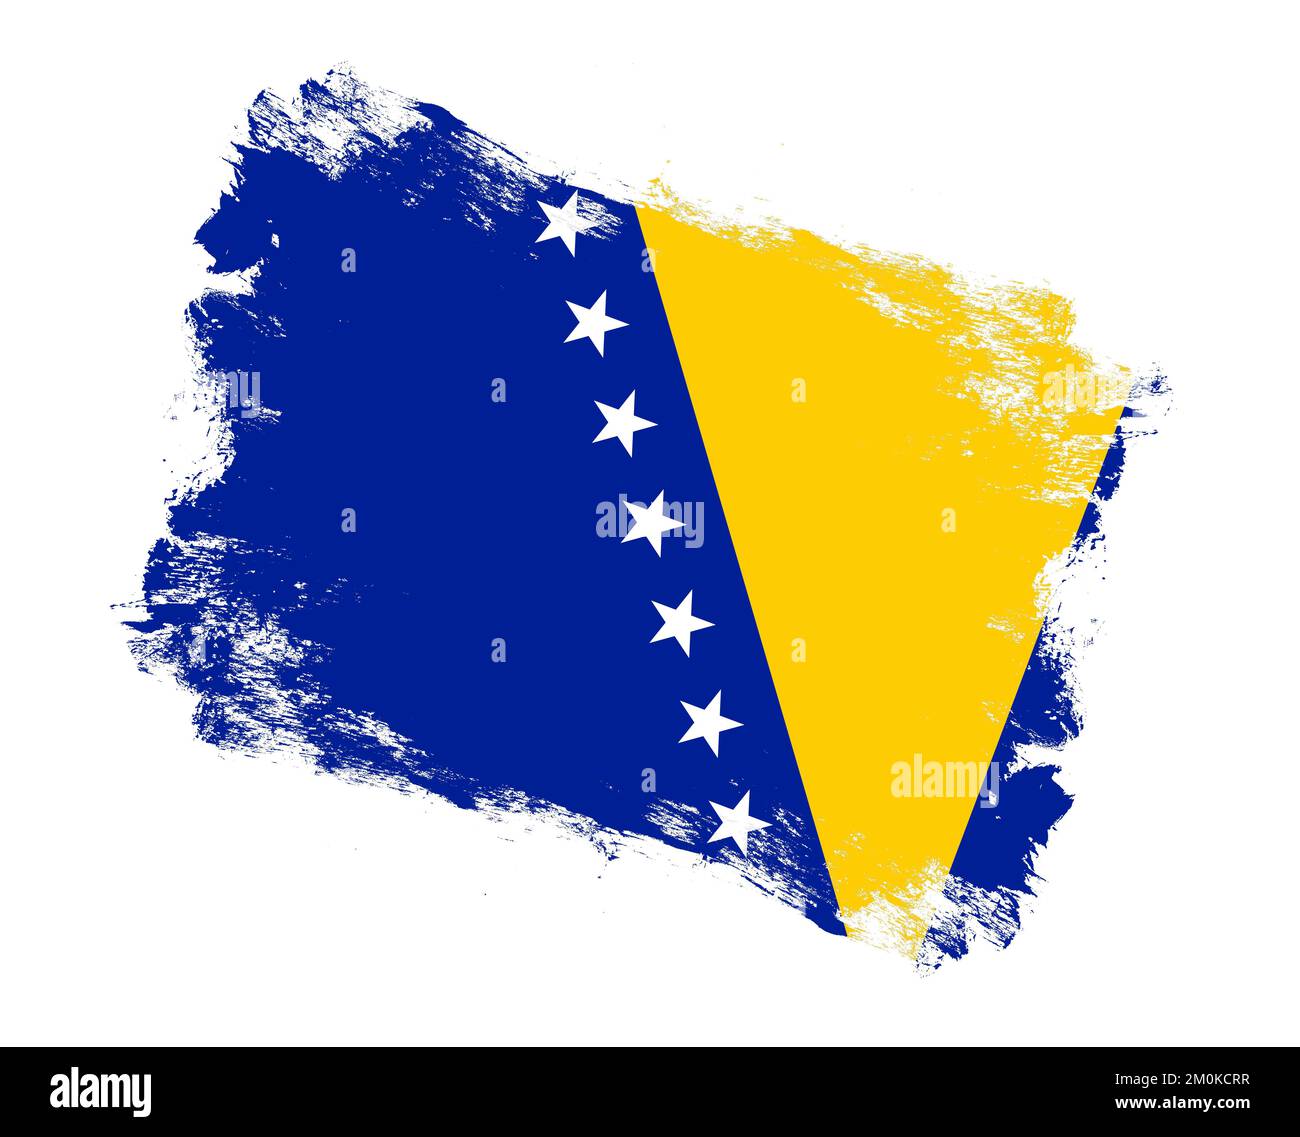 Pinceau peint drapeau de bosnie-herzégovine sur fond blanc Banque D'Images